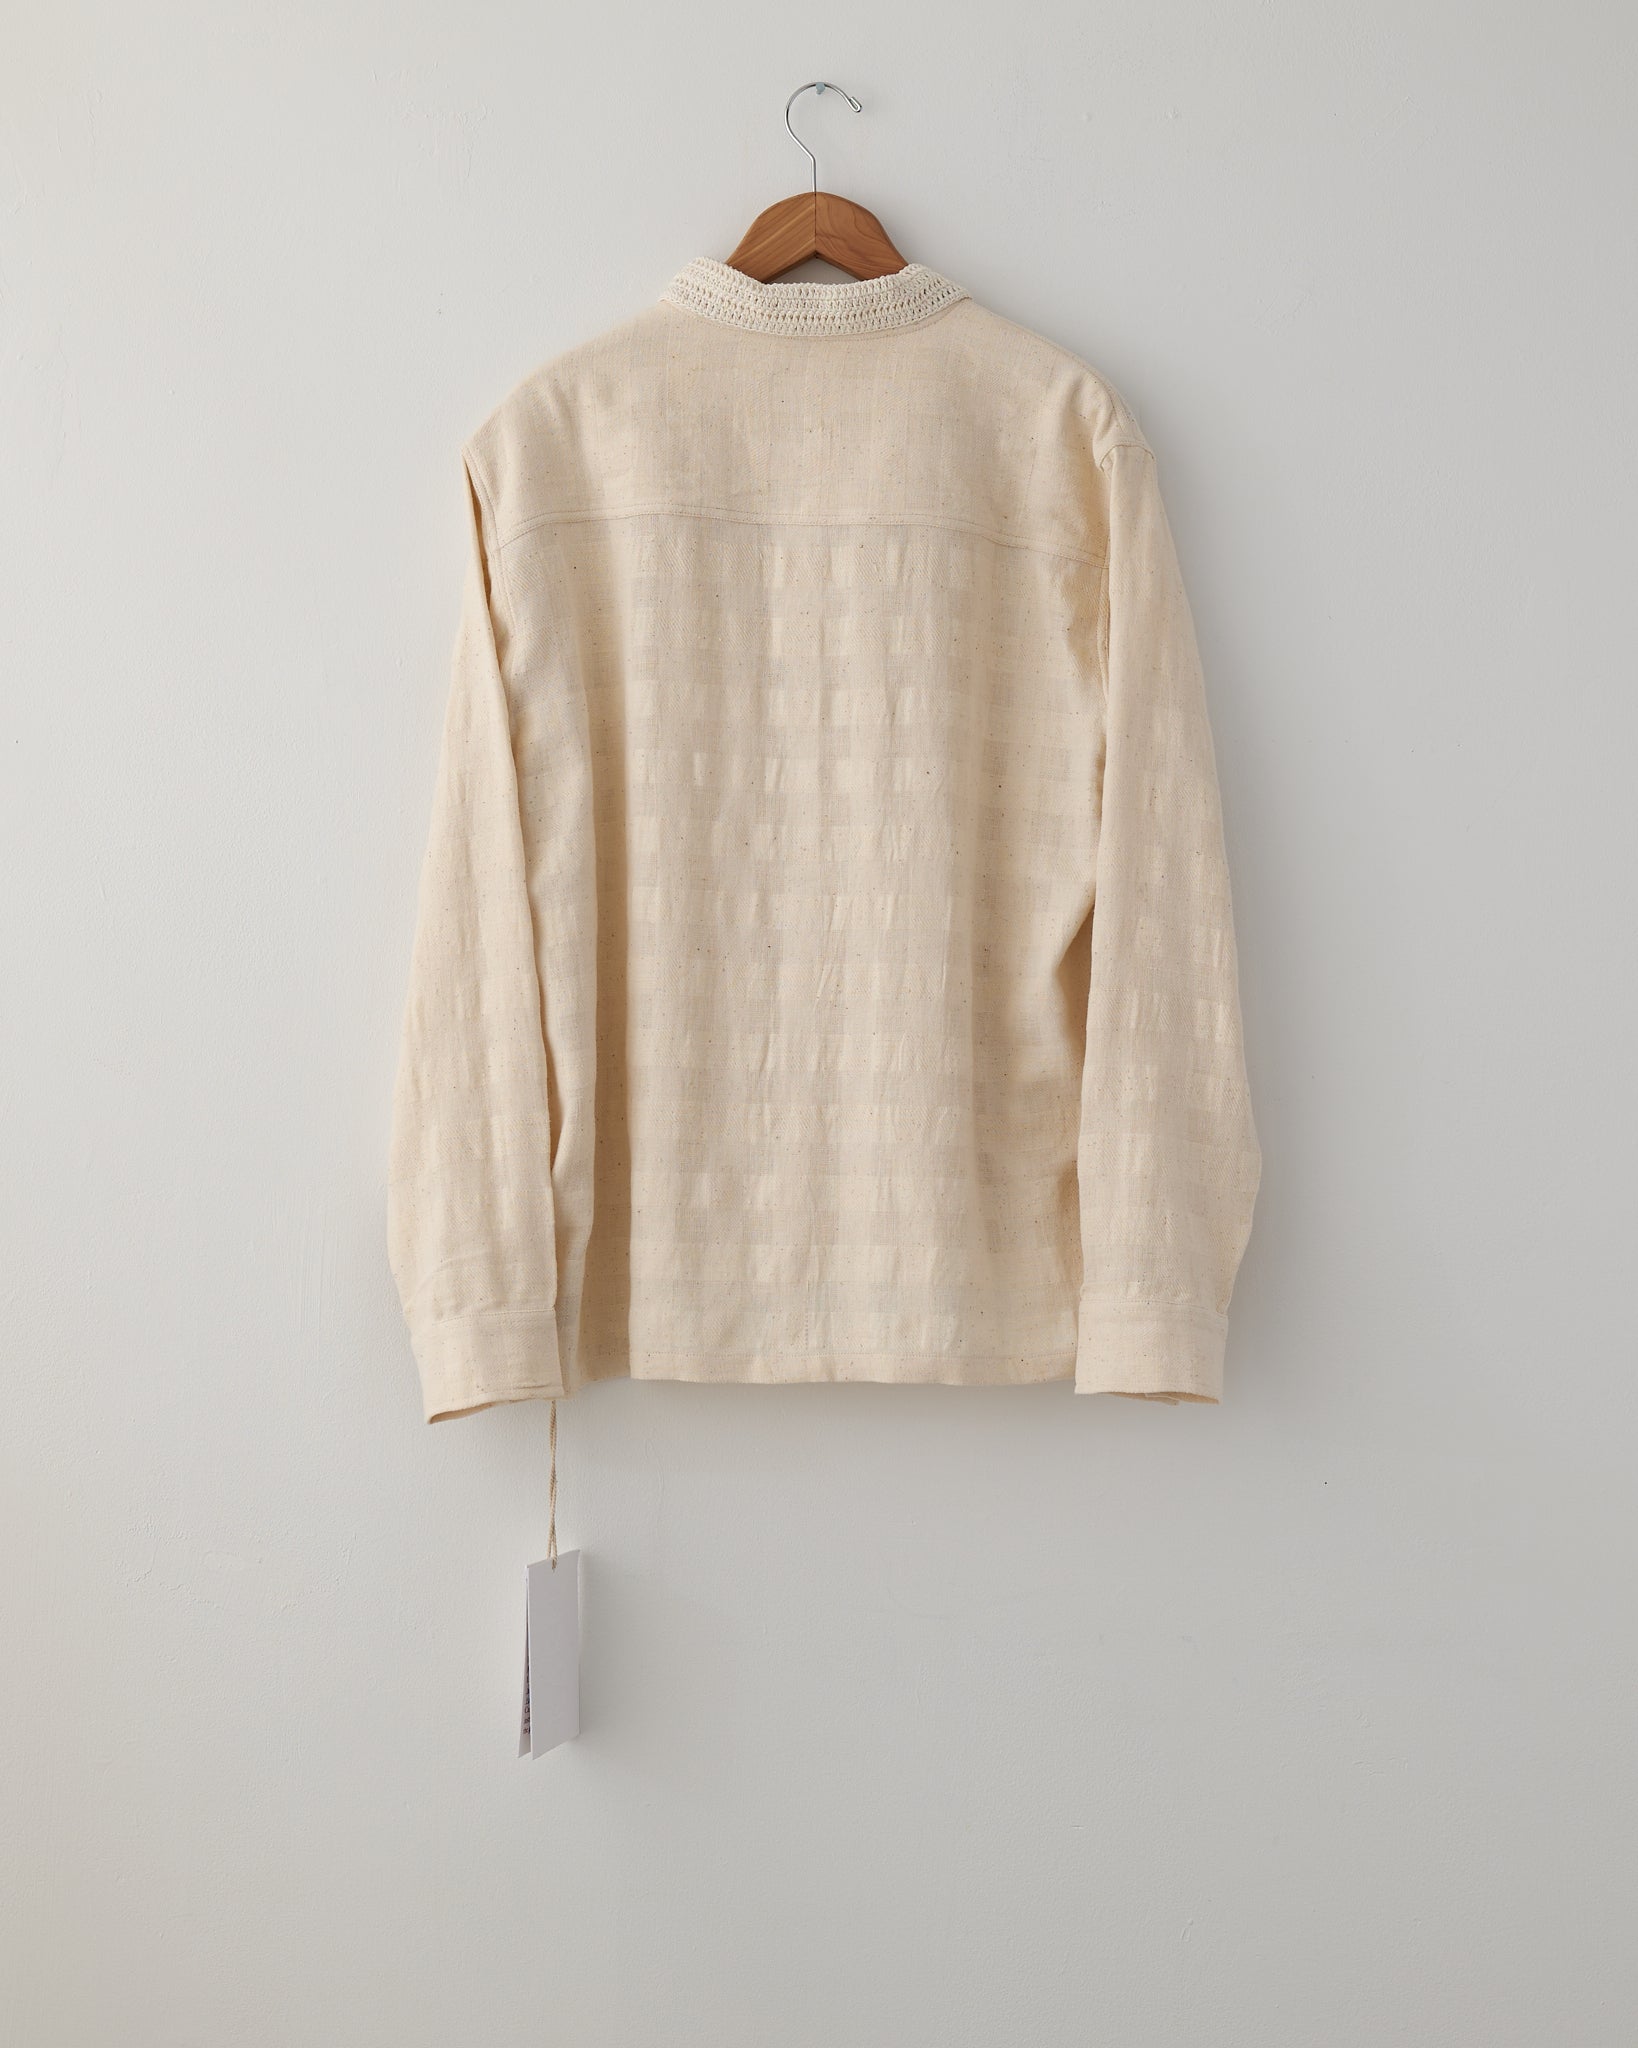 Cotton Woven Shirt, Handloom Crochet Collar